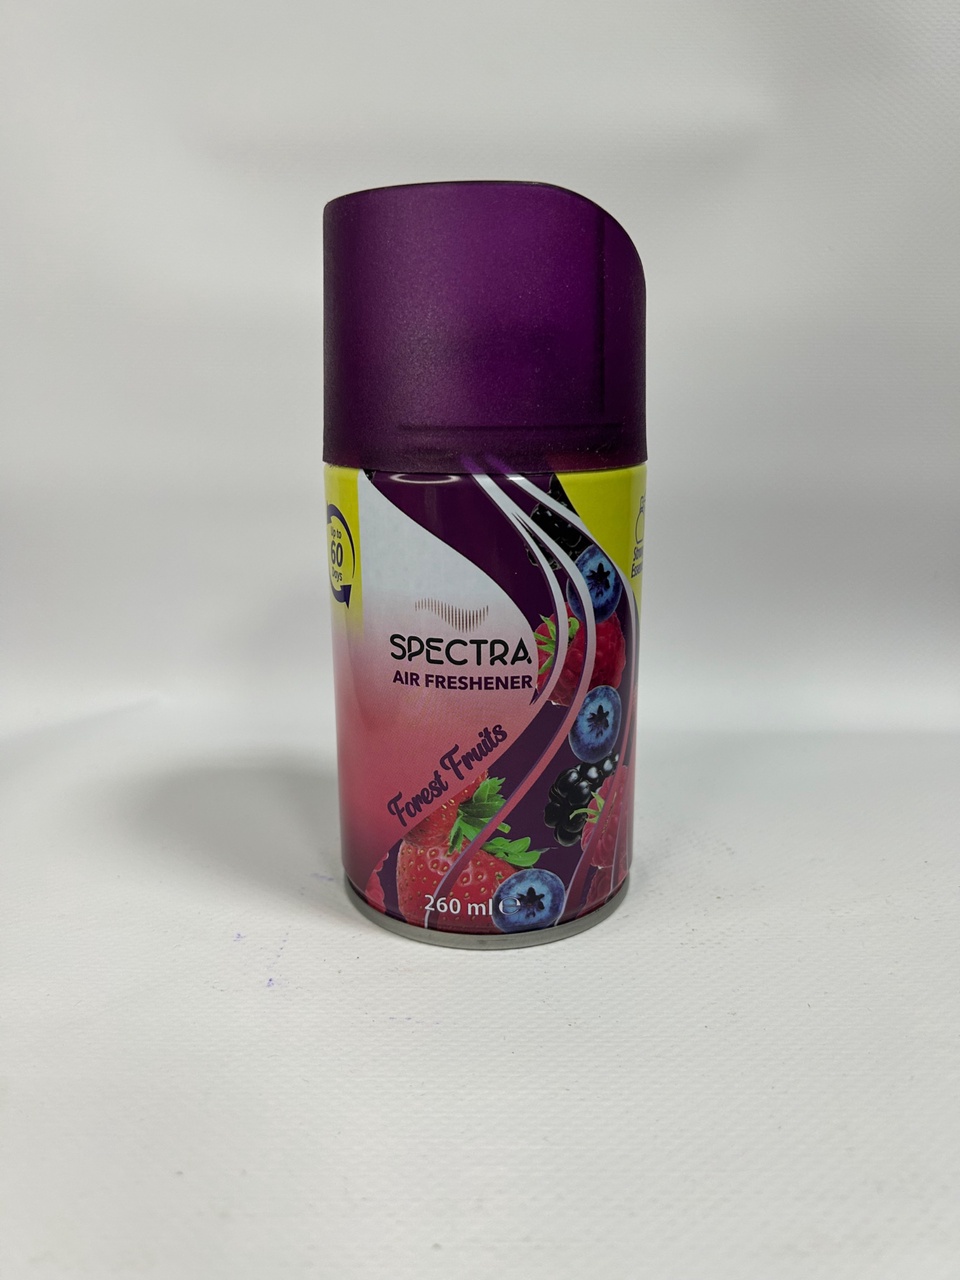 Спрей освежитель Spectra “Foresr Frits” - 180 ₽, заказать онлайн.